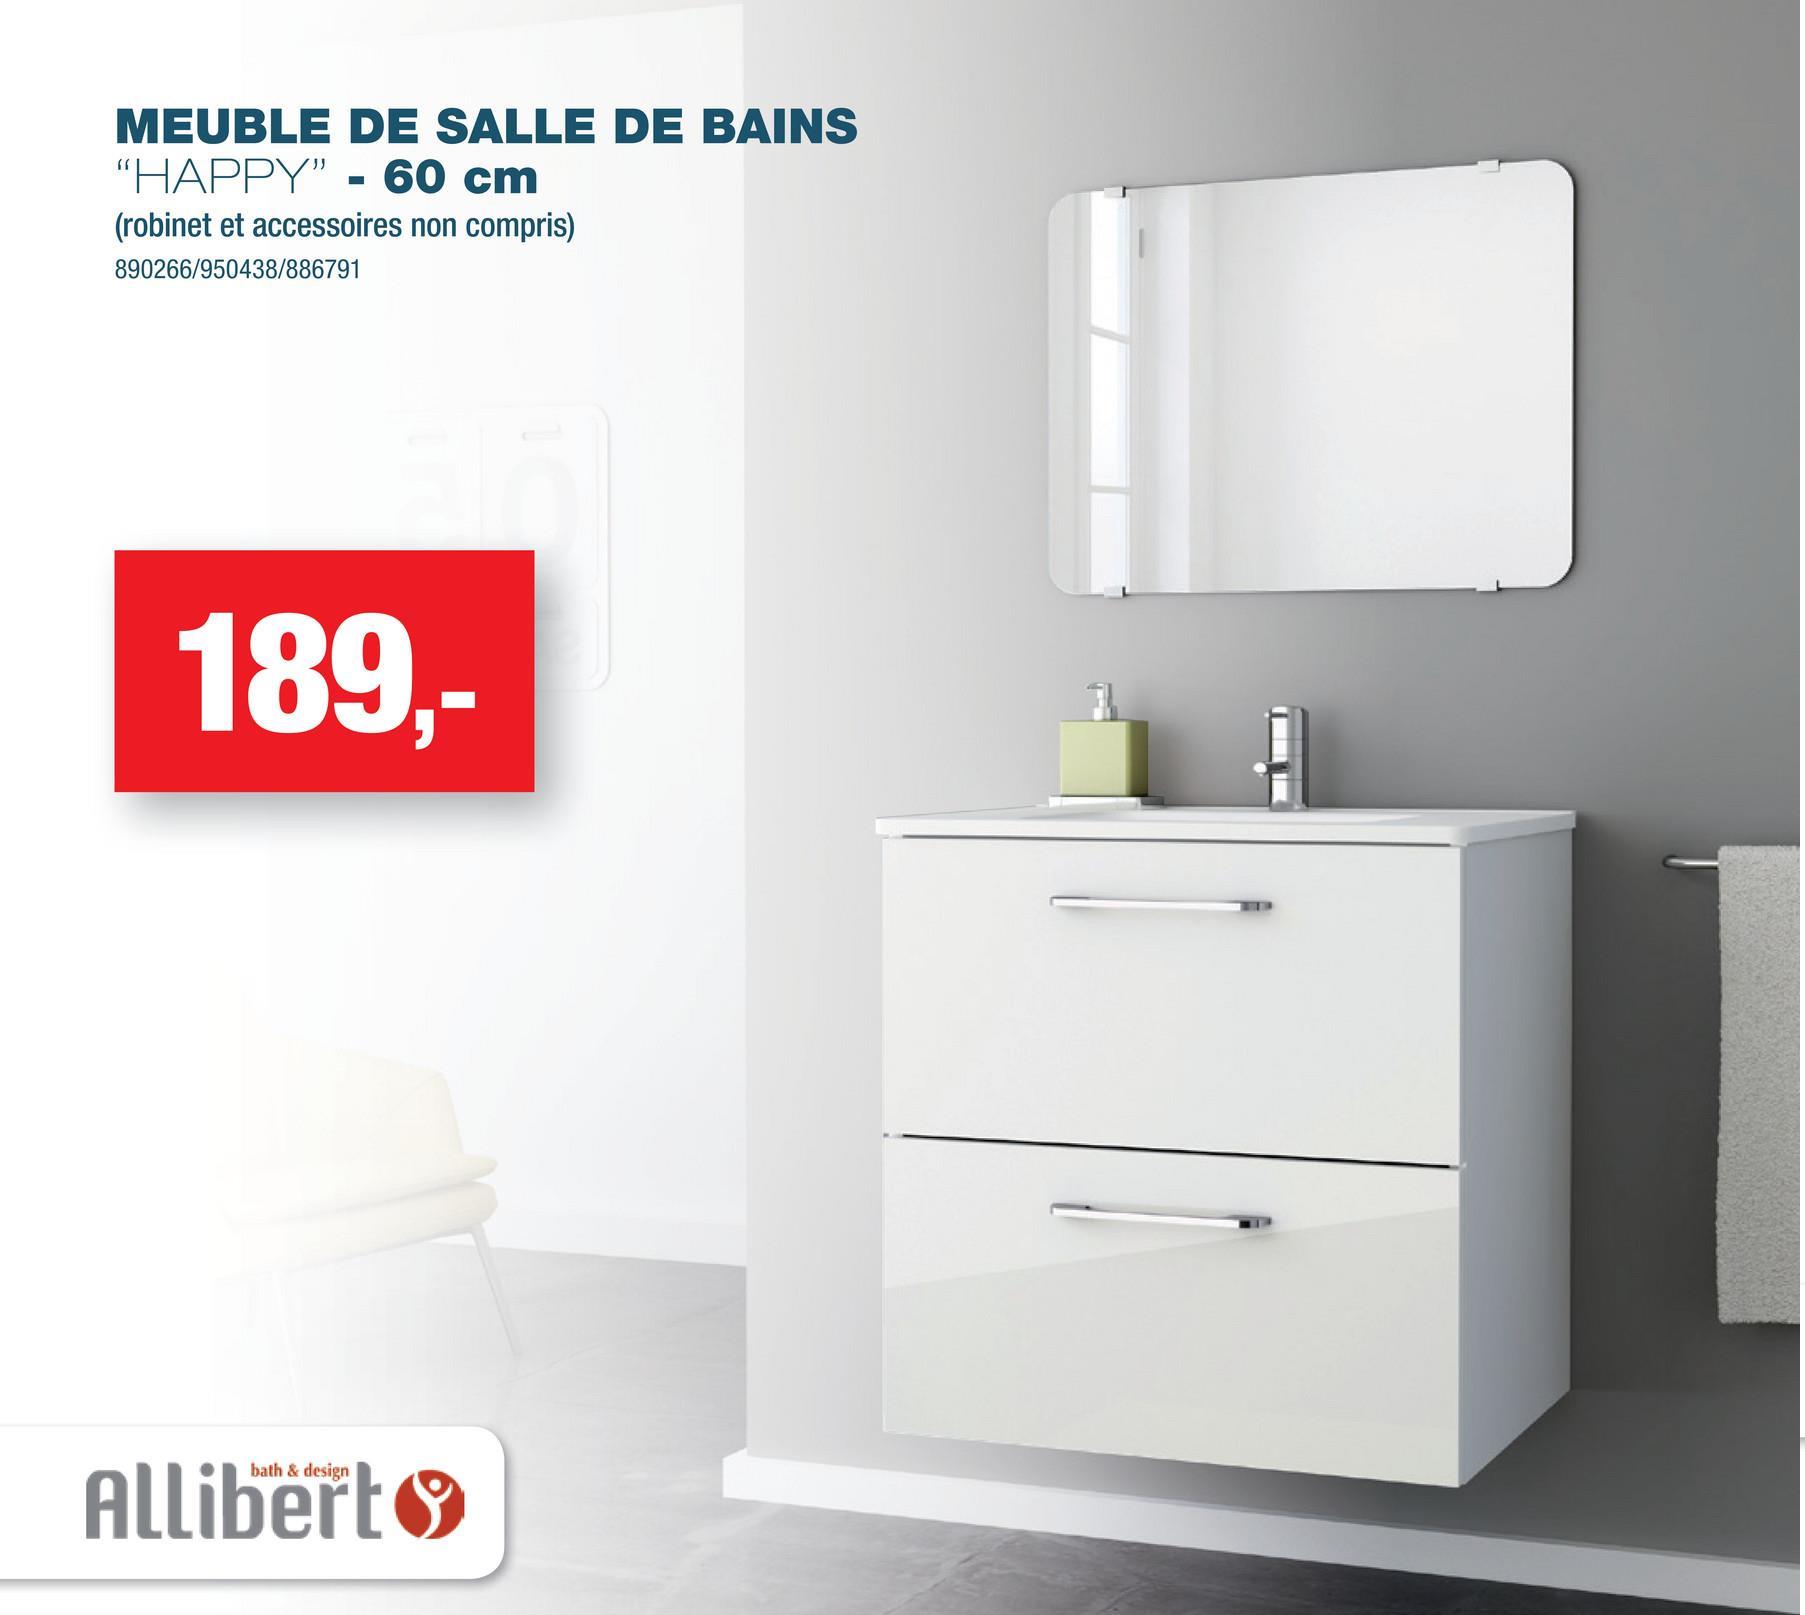 MEUBLE DE SALLE DE BAINS
"HAPPY" - 60 cm
(robinet et accessoires non compris)
890266/950438/886791
189,-
bath & design
Allibert